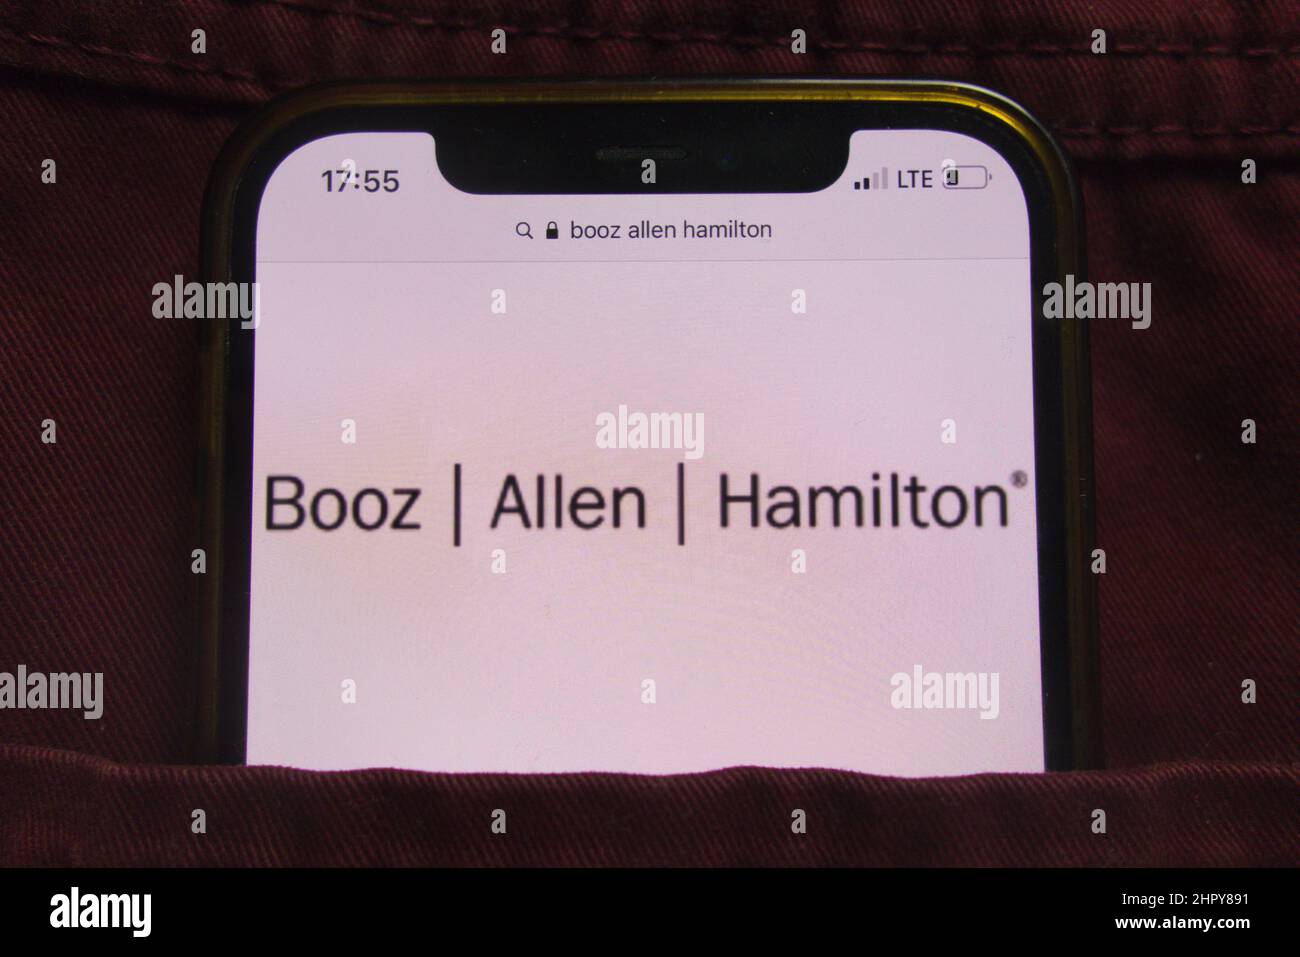 KONSKIE, POLOGNE - 22 février 2022 : logo de Booz Allen Hamilton Holding Corporation affiché sur un téléphone mobile caché dans une poche de jeans Banque D'Images